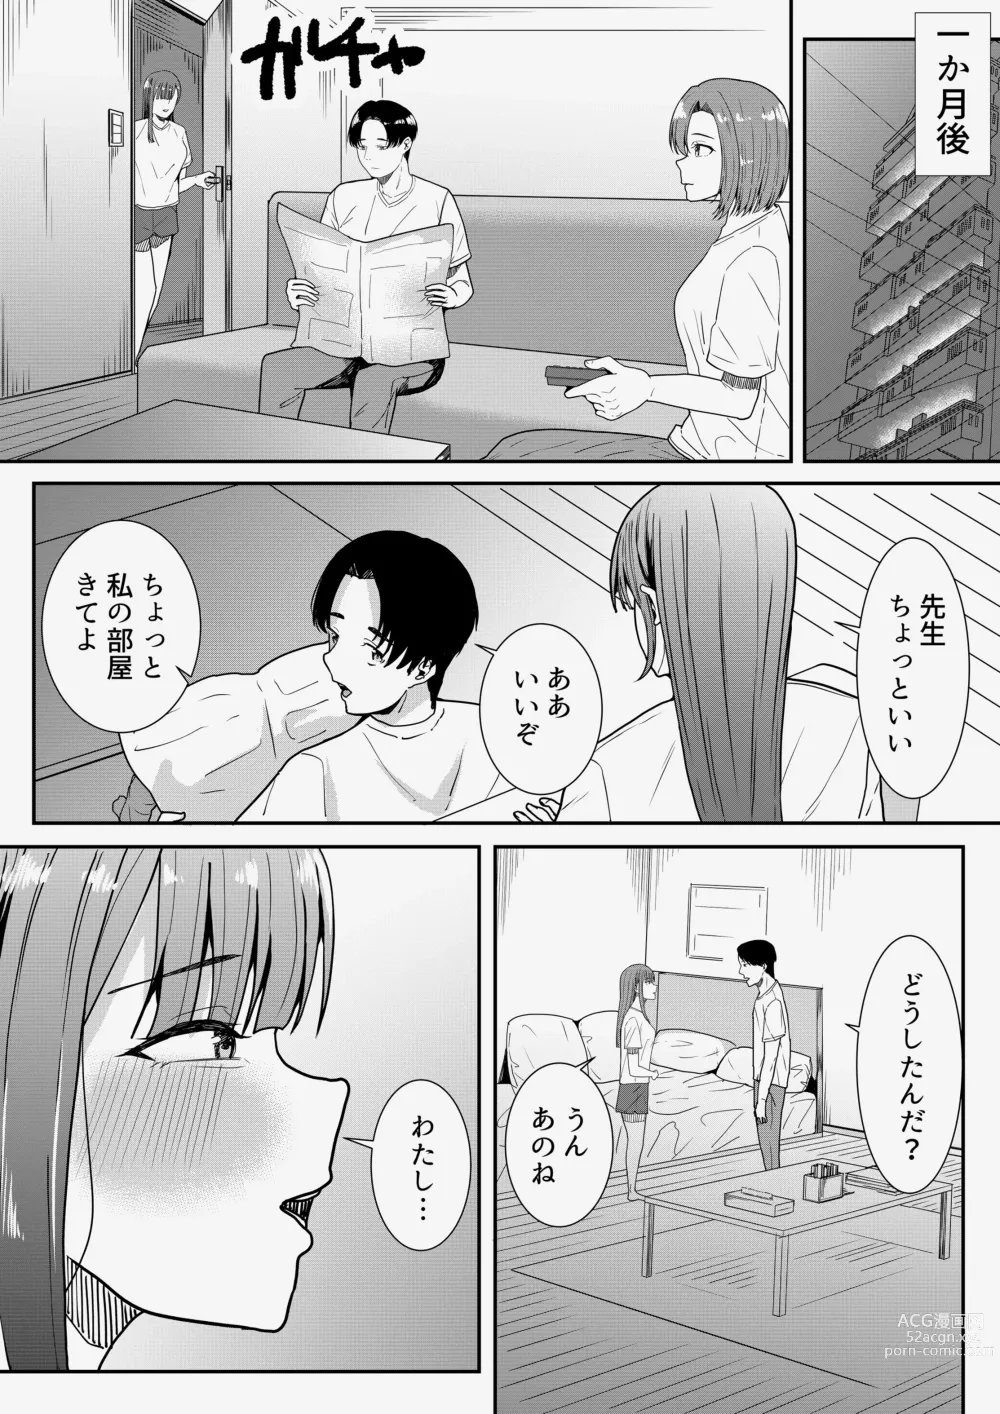 Page 65 of doujinshi Sensei Daisuki